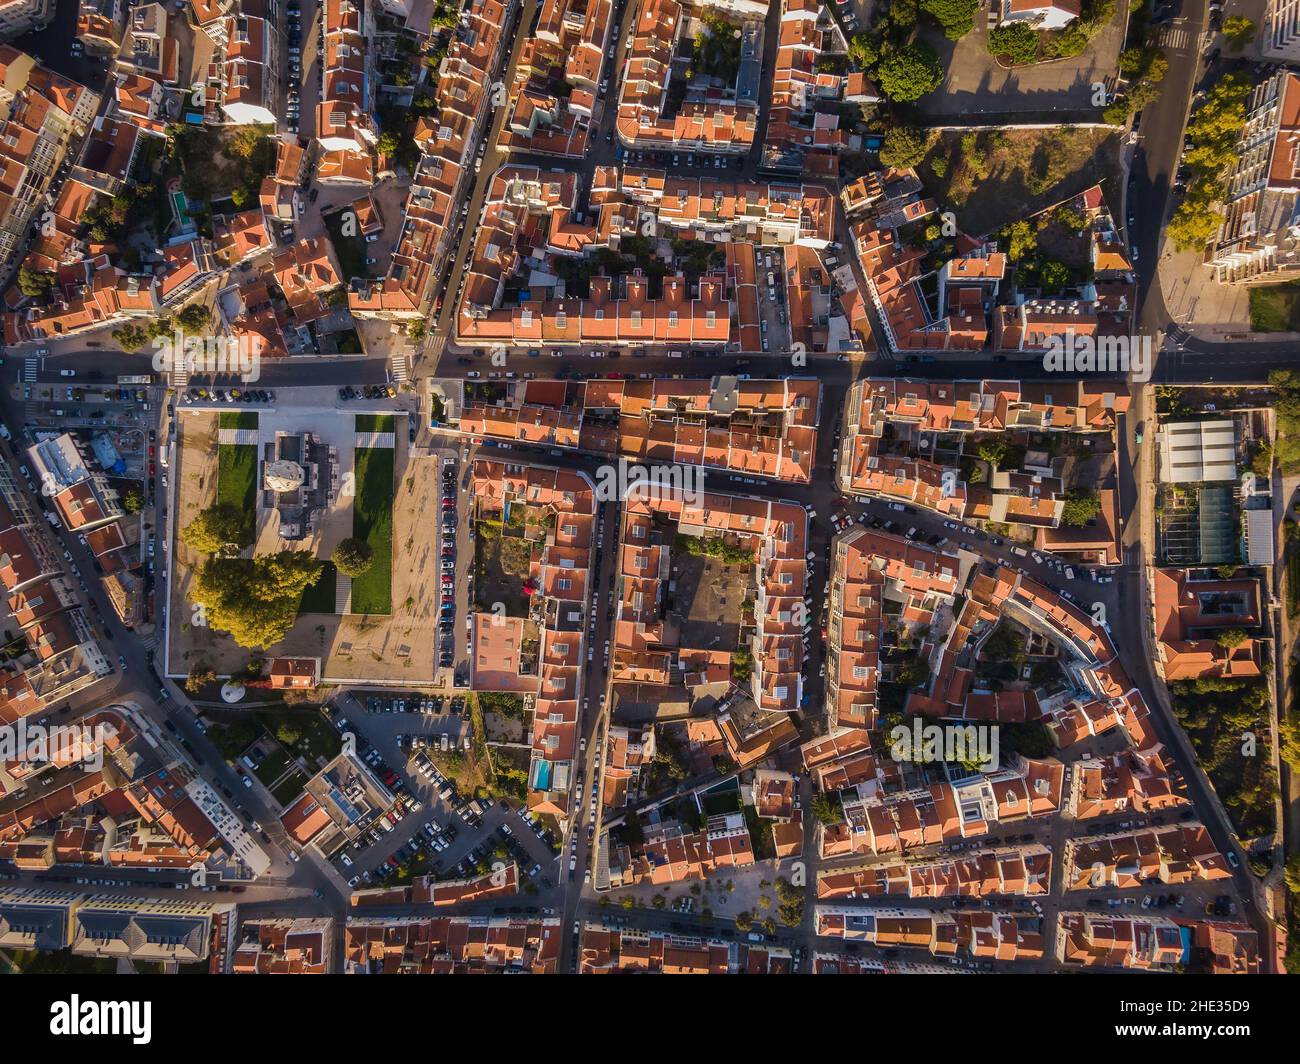 Vista aérea de arriba hacia abajo del tradicional barrio residencial al amanecer en el distrito Belem de Lisboa, Portugal. Foto de stock